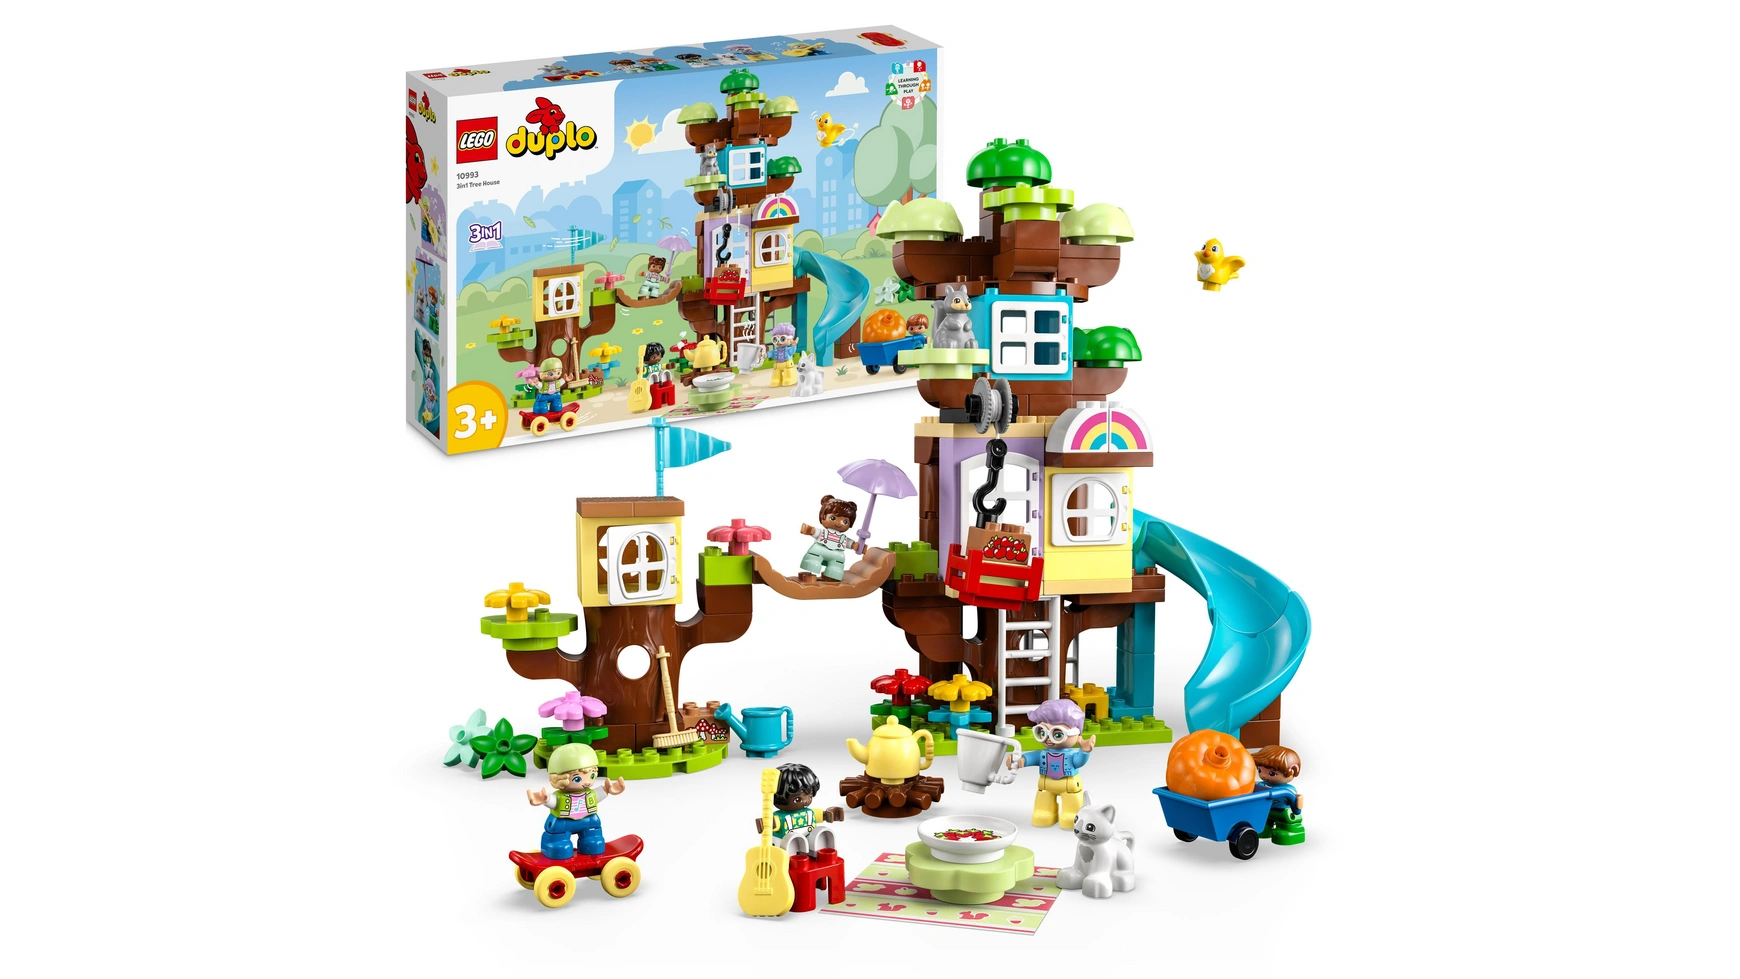 Lego DUPLO Набор игрушек Домик на дереве 3 в 1 для малышей с животными